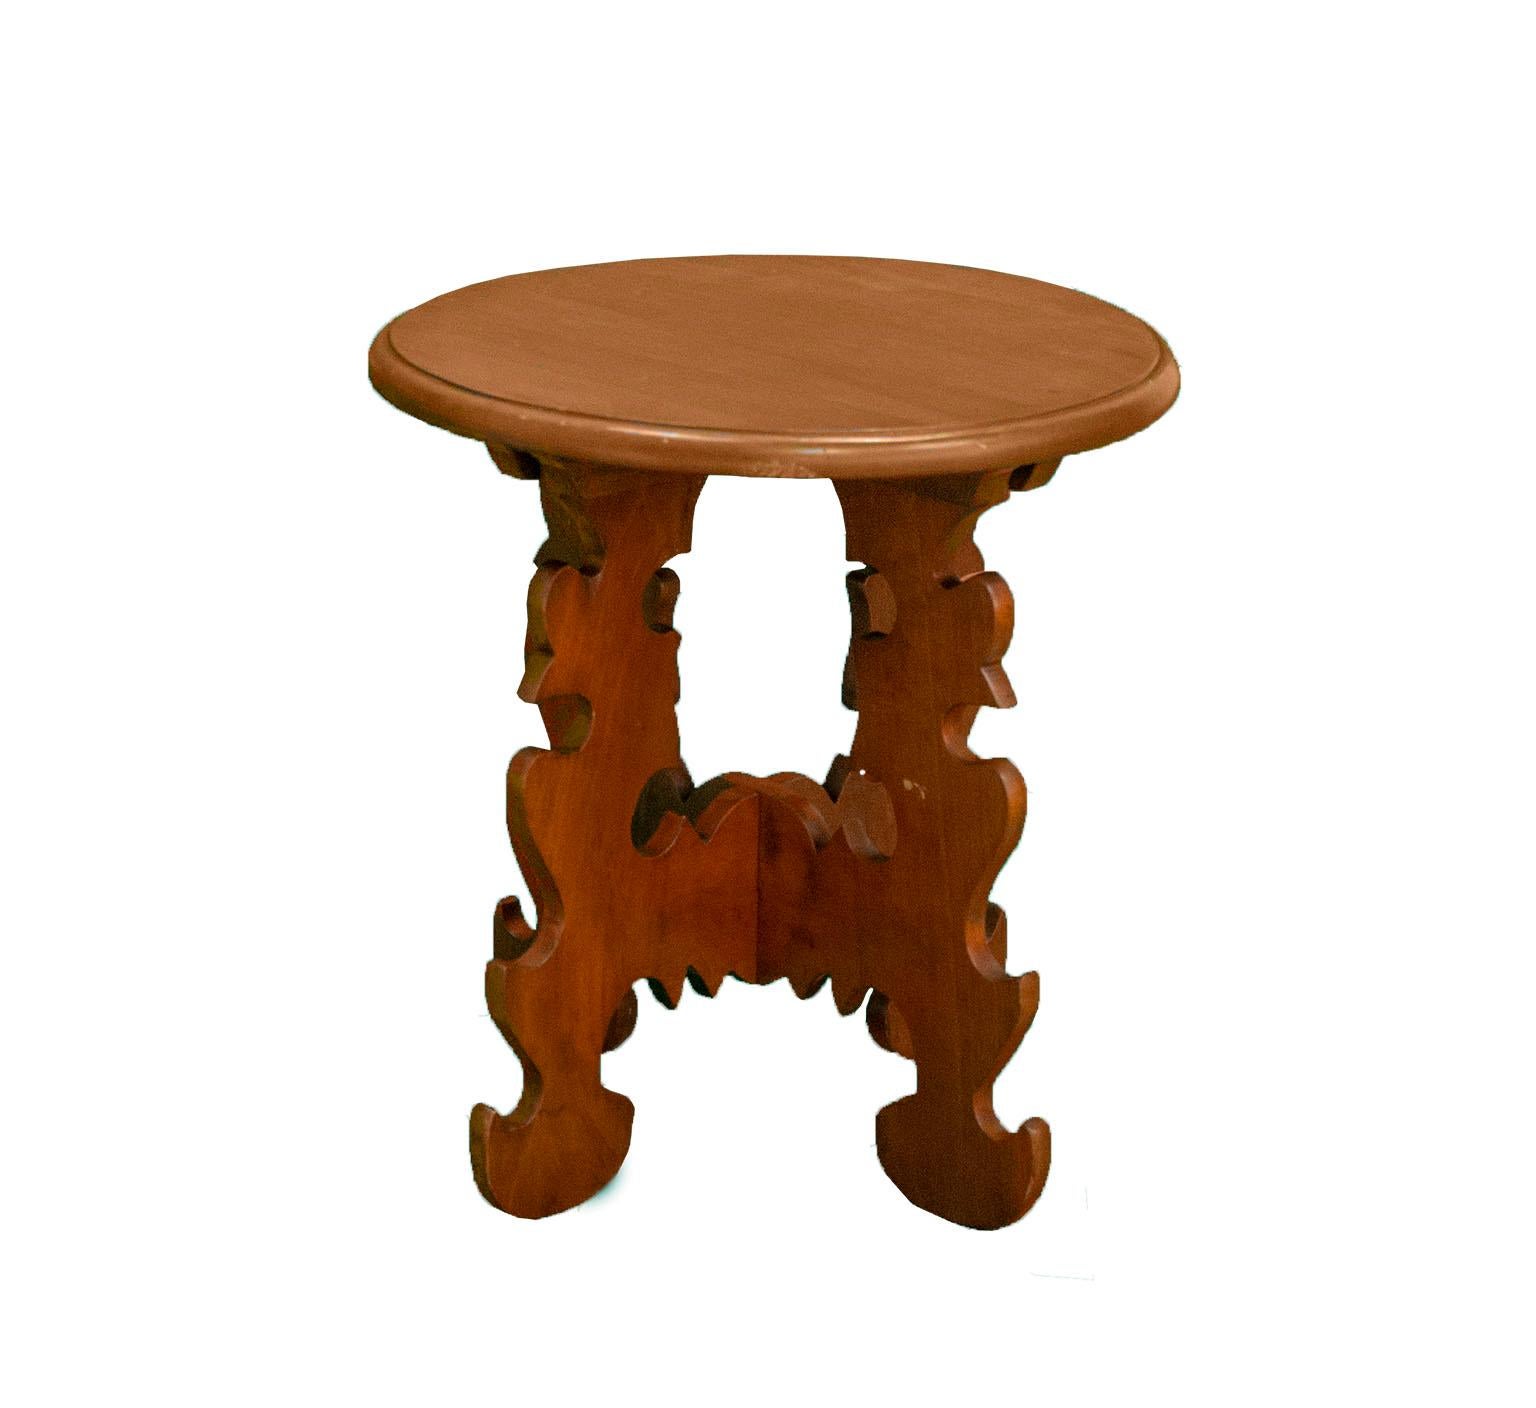 Ensemble de deux chaises, d'une table ronde et d'un banc.
fabriqué en bois par Don Shoemaeker au Mexique
Il possède des parties détachables qui n'ont pas besoin de vis pour être fixées
bois de cueramo et granadillo
Mesures :
banc pour s'asseoir